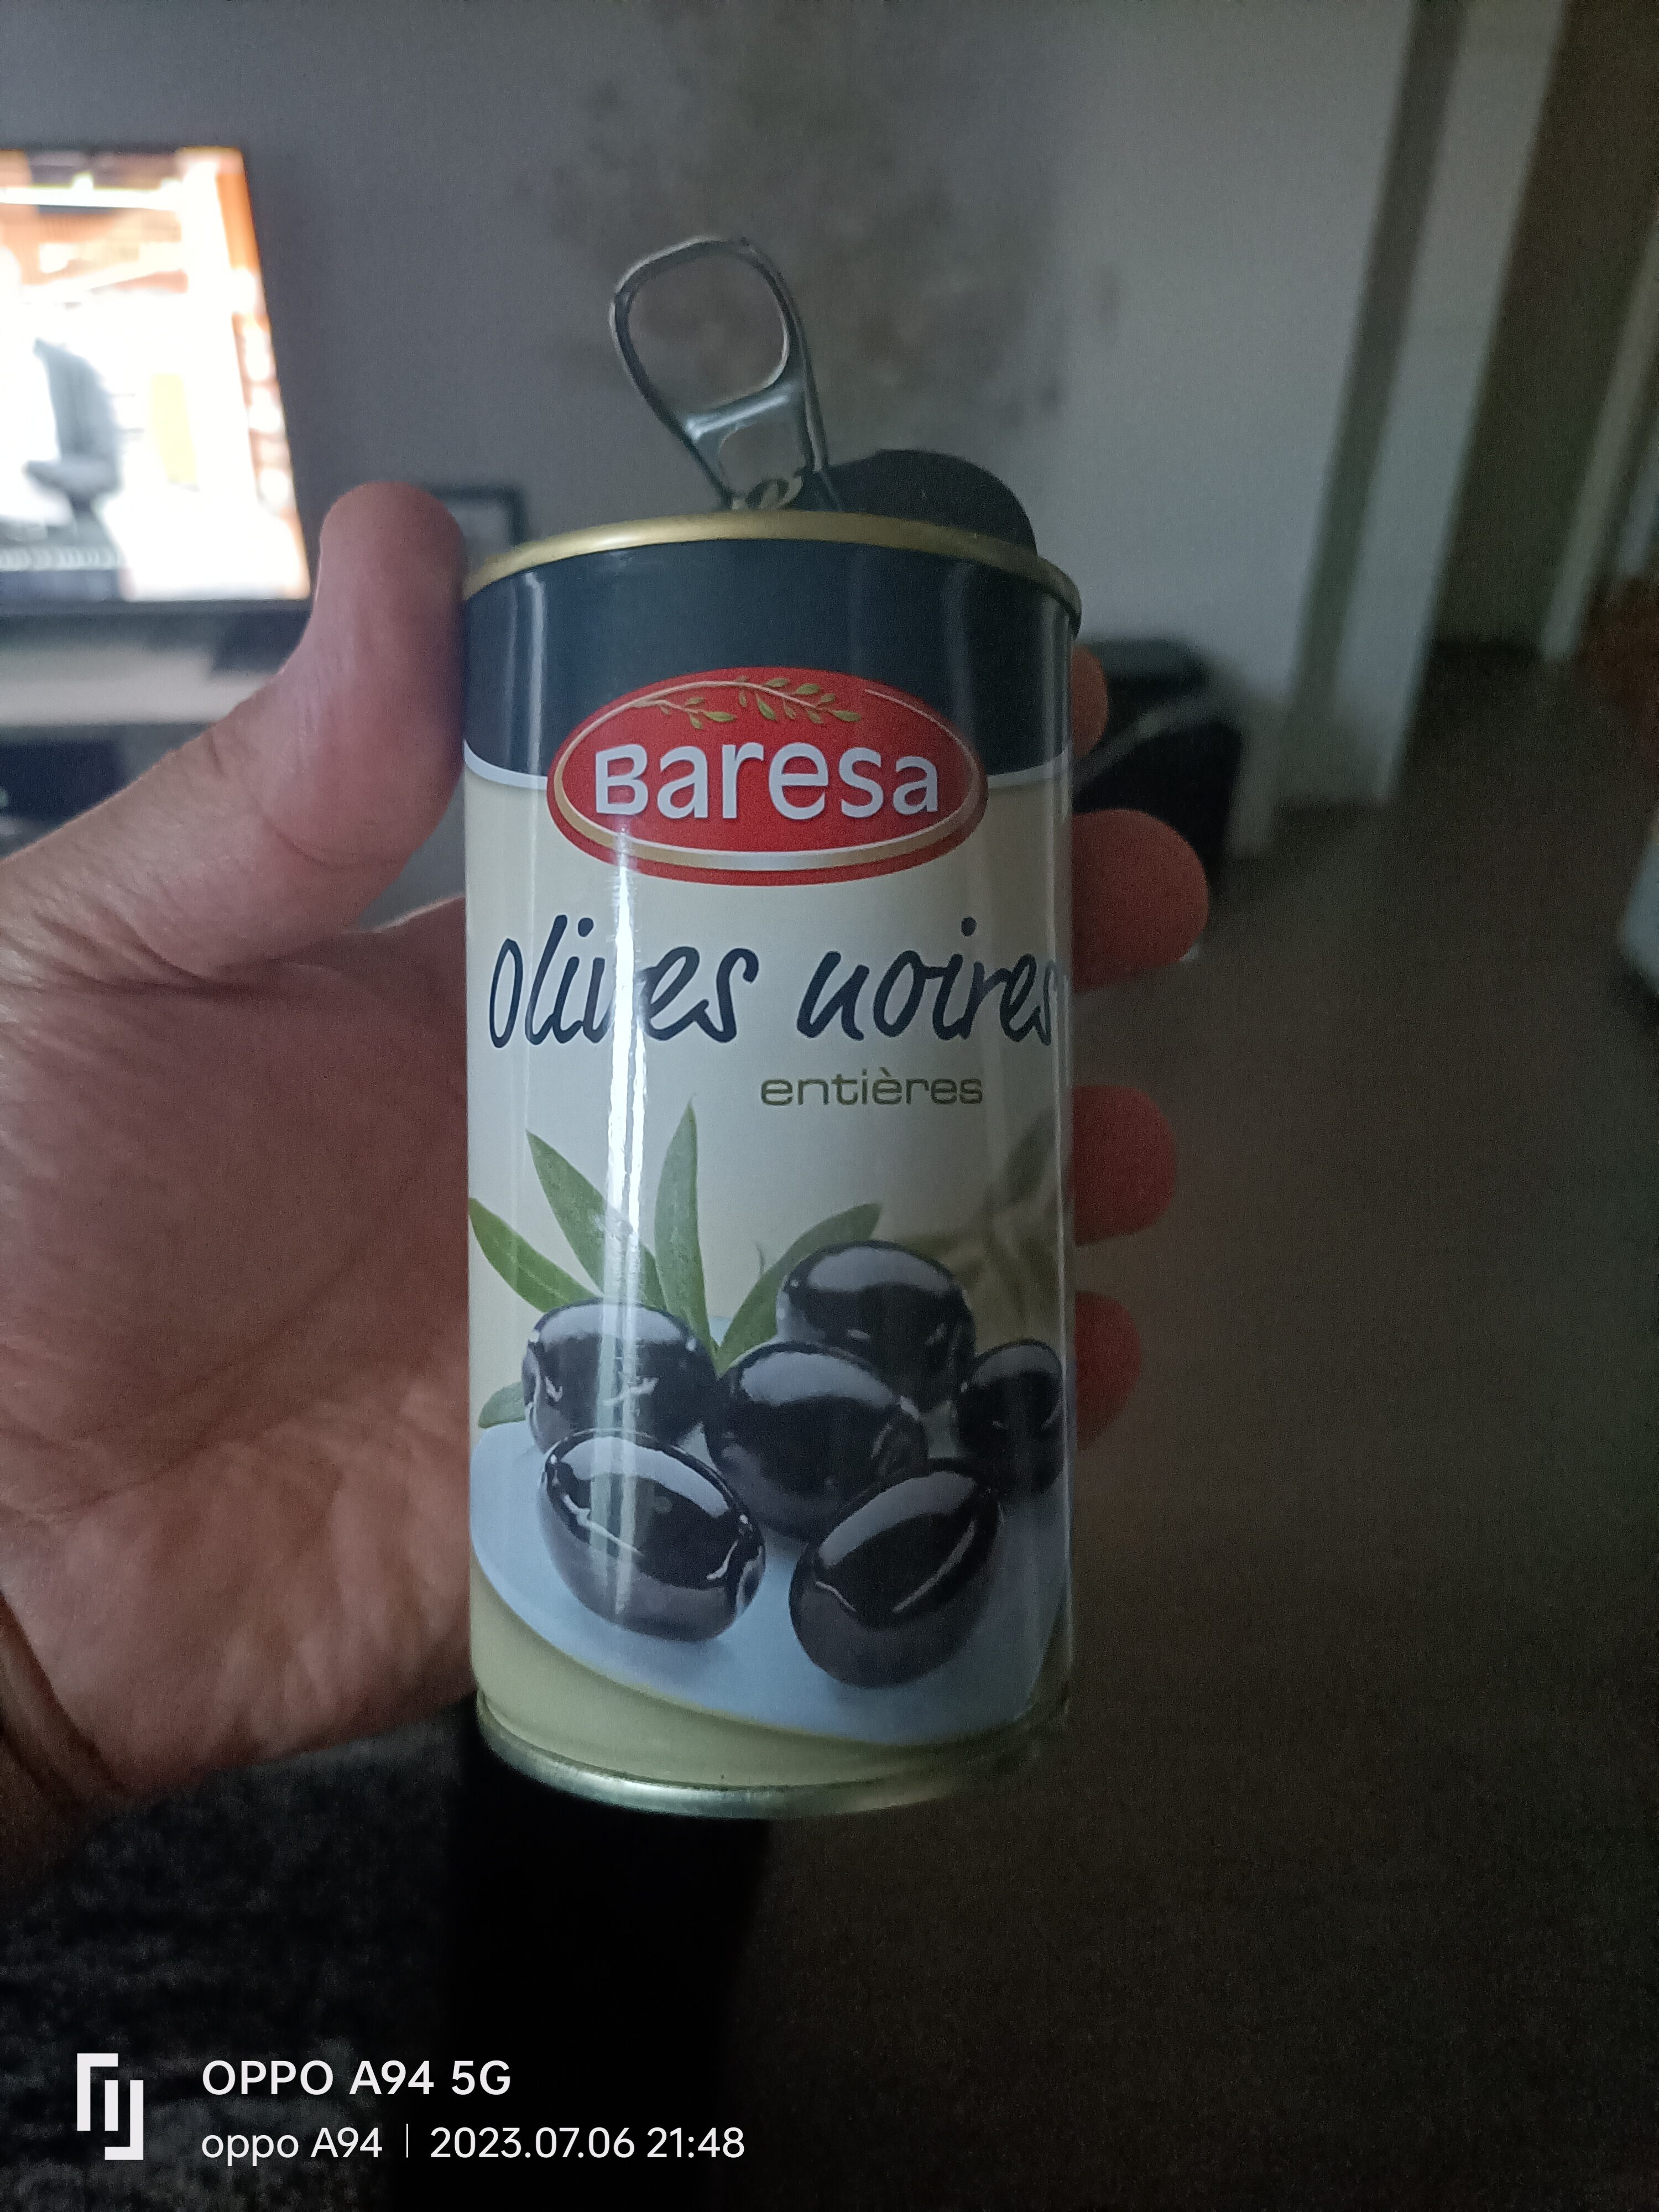 Olives noires entières - Prodotto - fr